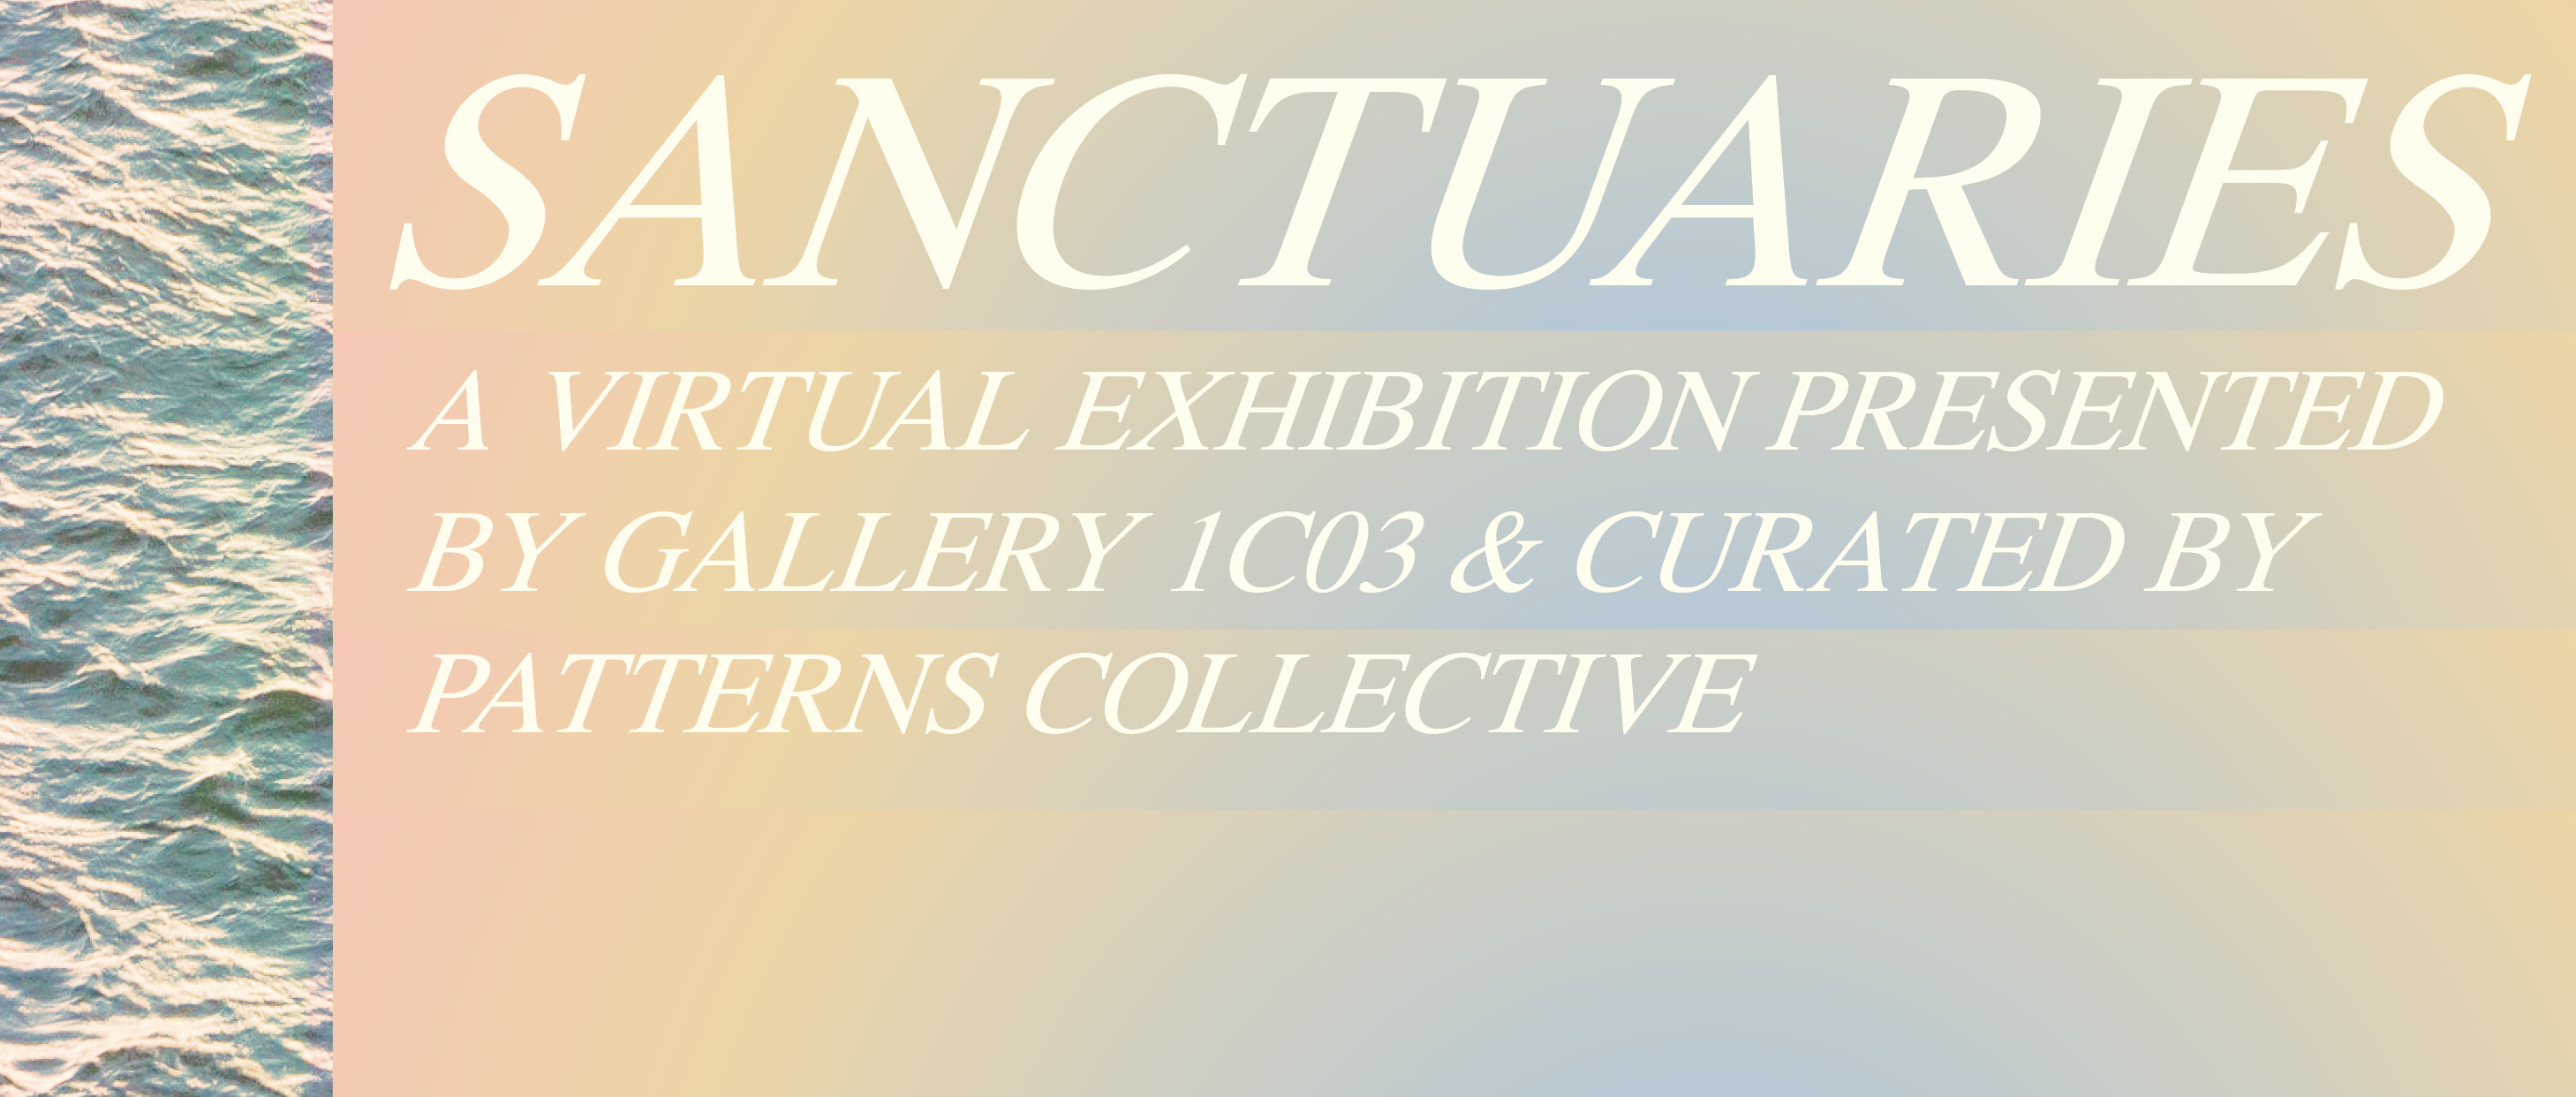 图形以桃色到淡蓝色的背景覆盖白色文字，上面写着“sanctuary A Virtual Exhibition by Gallery 1C03 & Curated by Patterns Collective”。图的左边缘有一张水的照片。